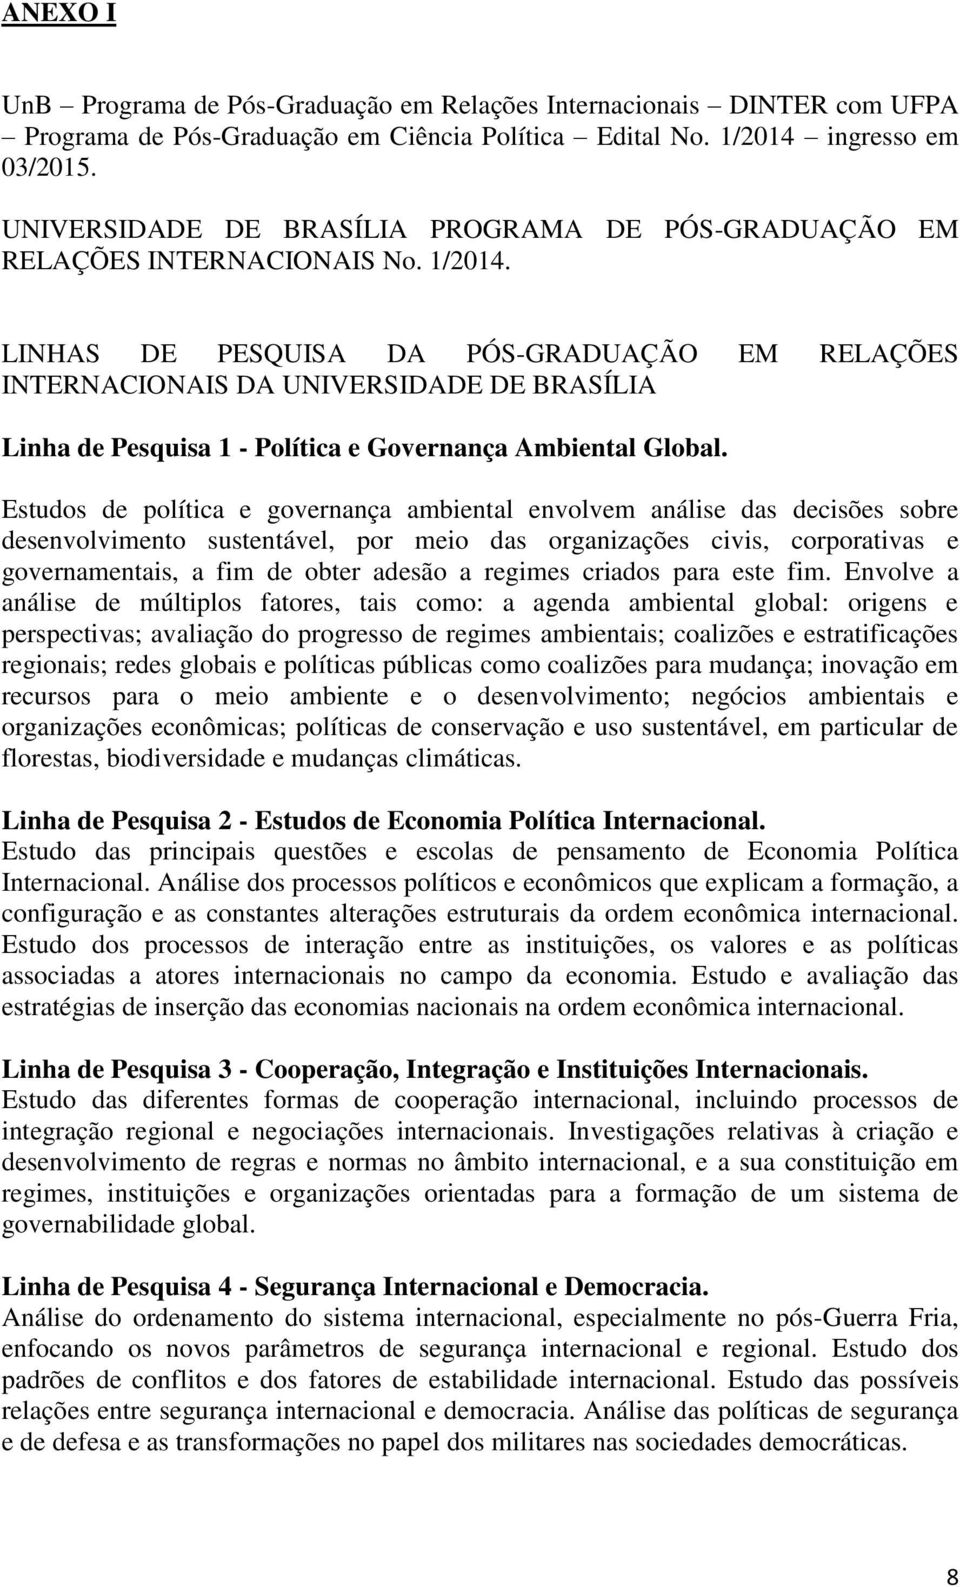 LINHAS DE PESQUISA DA PÓS-GRADUAÇÃO EM RELAÇÕES INTERNACIONAIS DA UNIVERSIDADE DE BRASÍLIA Linha de Pesquisa 1 - Política e Governança Ambiental Global.